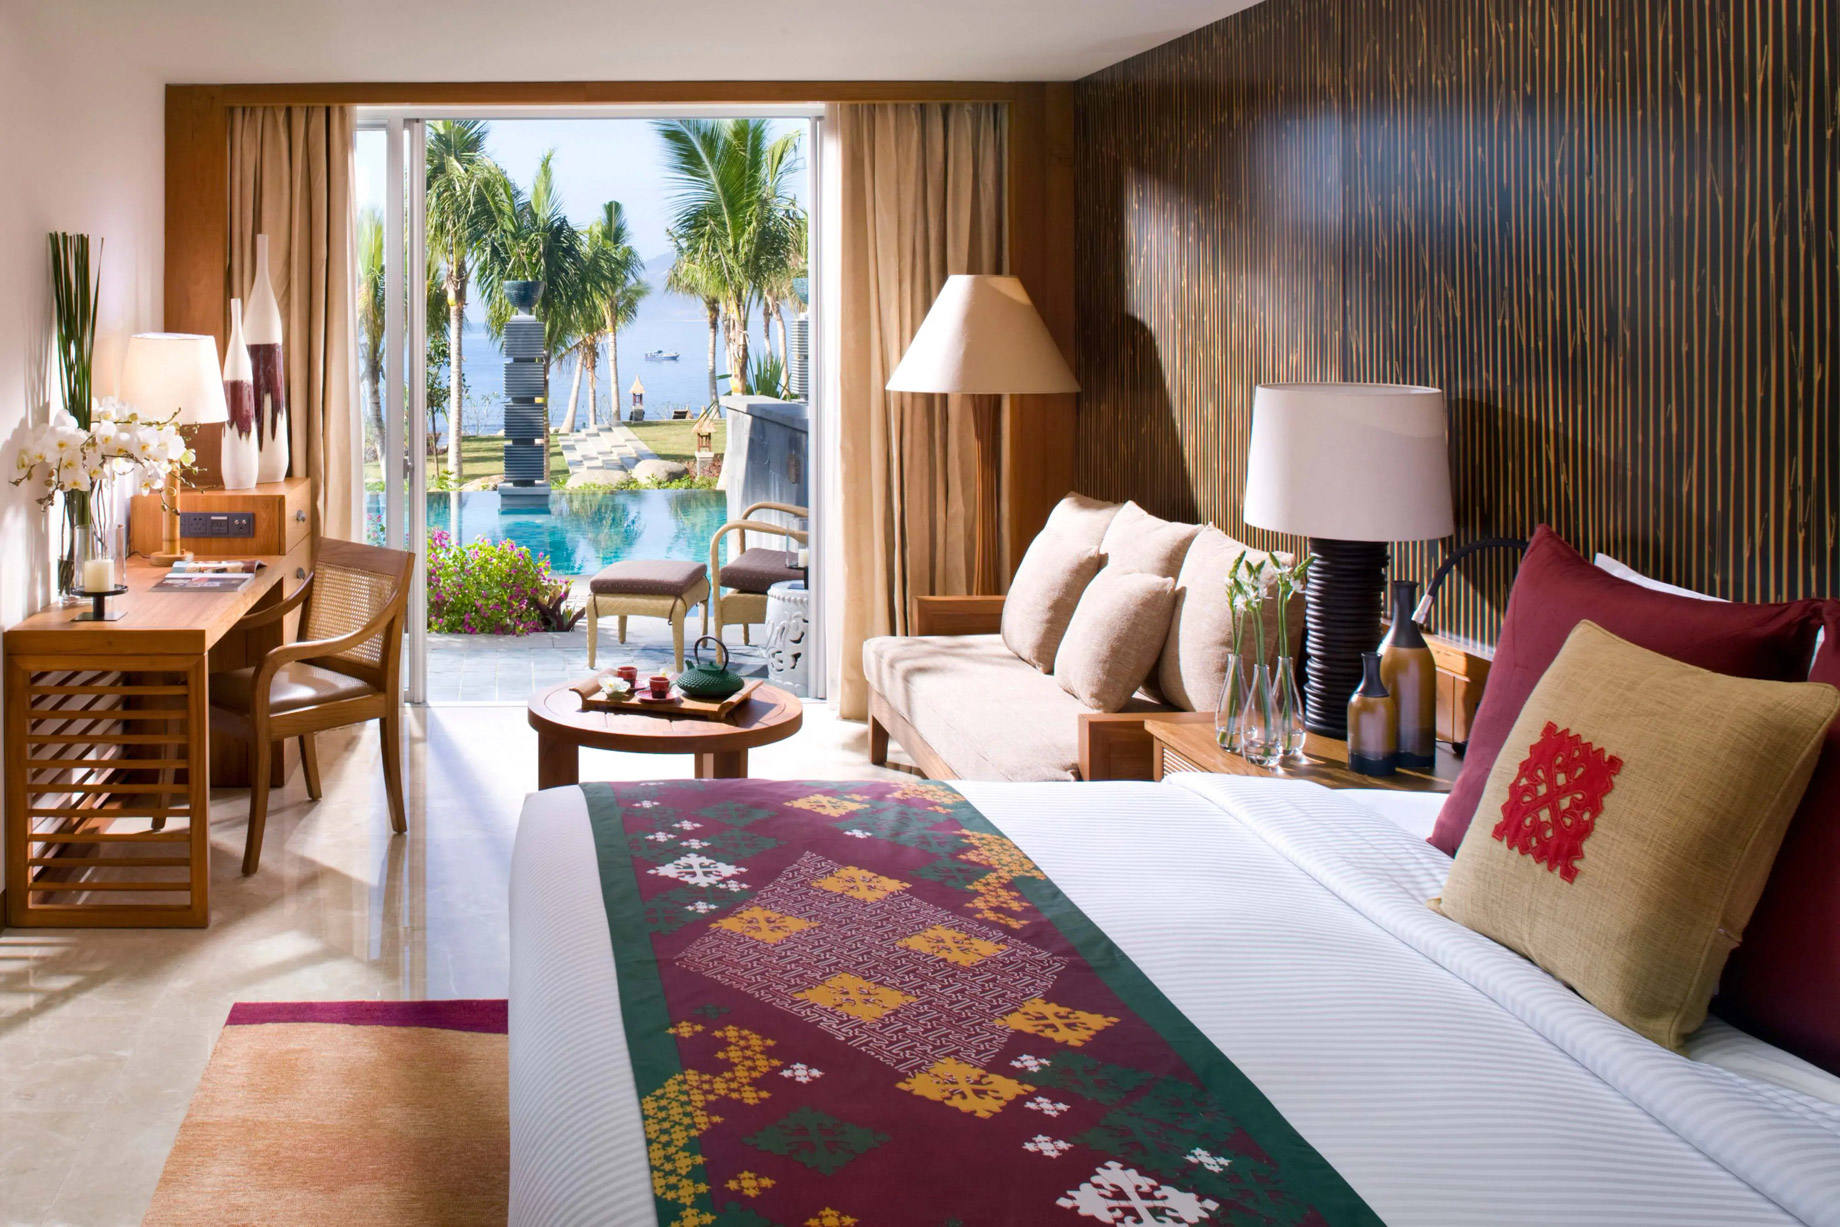 Mandarin Oriental, Sanya Hotel – Hainan, China – Pool Pavilion Room